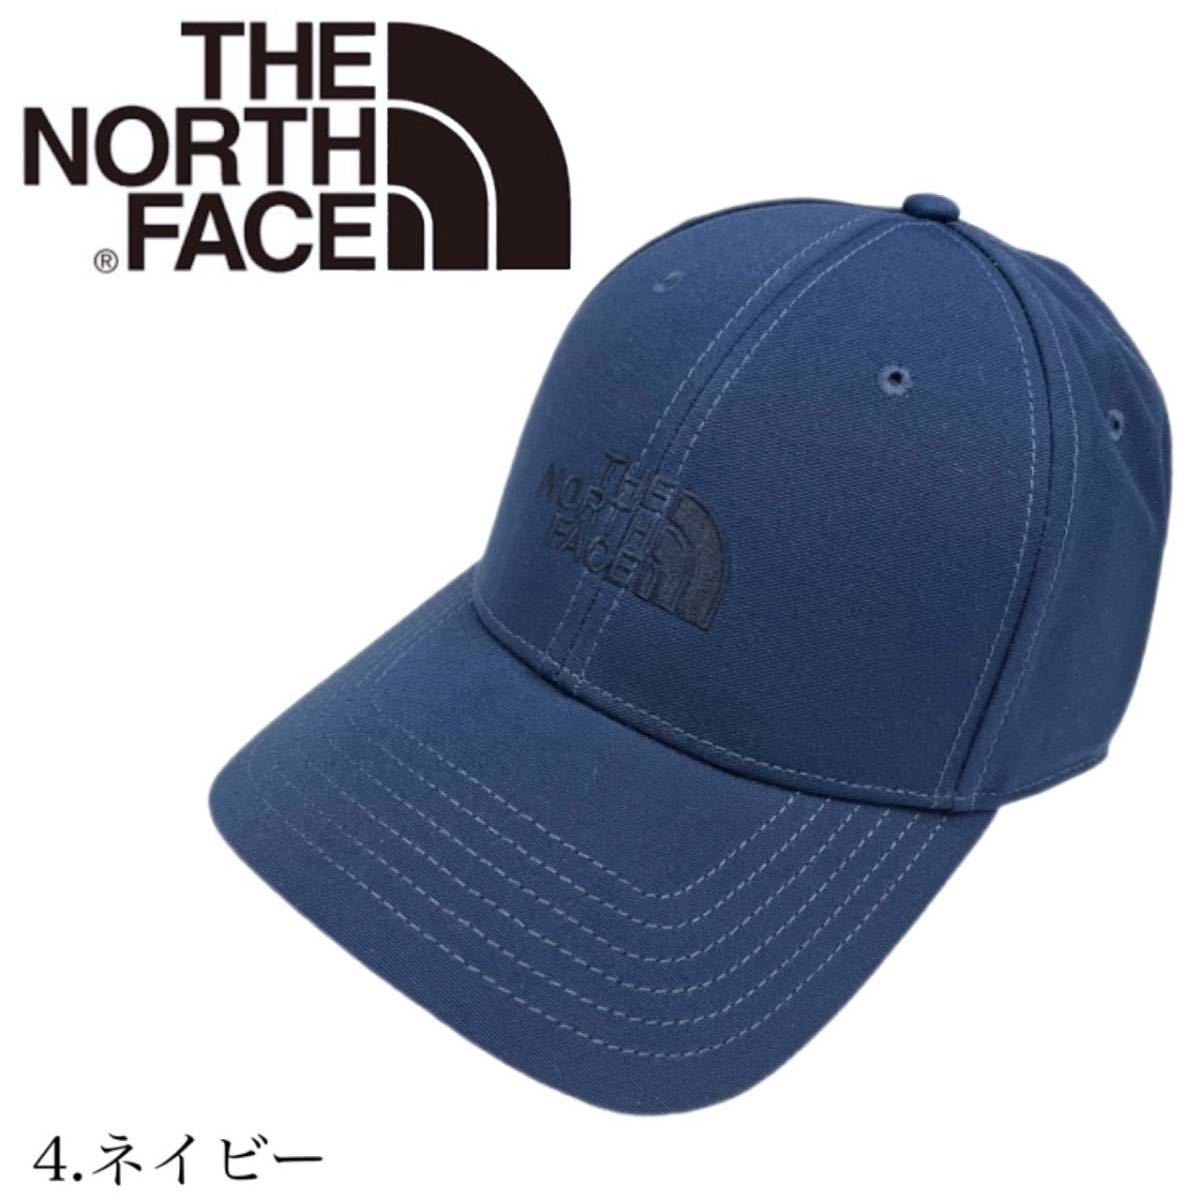 ノースフェイス 66 クラシック キャップ 帽子 NF0A4VSV ワンサイズ ネイビー コットン素材 THE NORTH FACE 66 CLASSIC HAT 新品_画像1